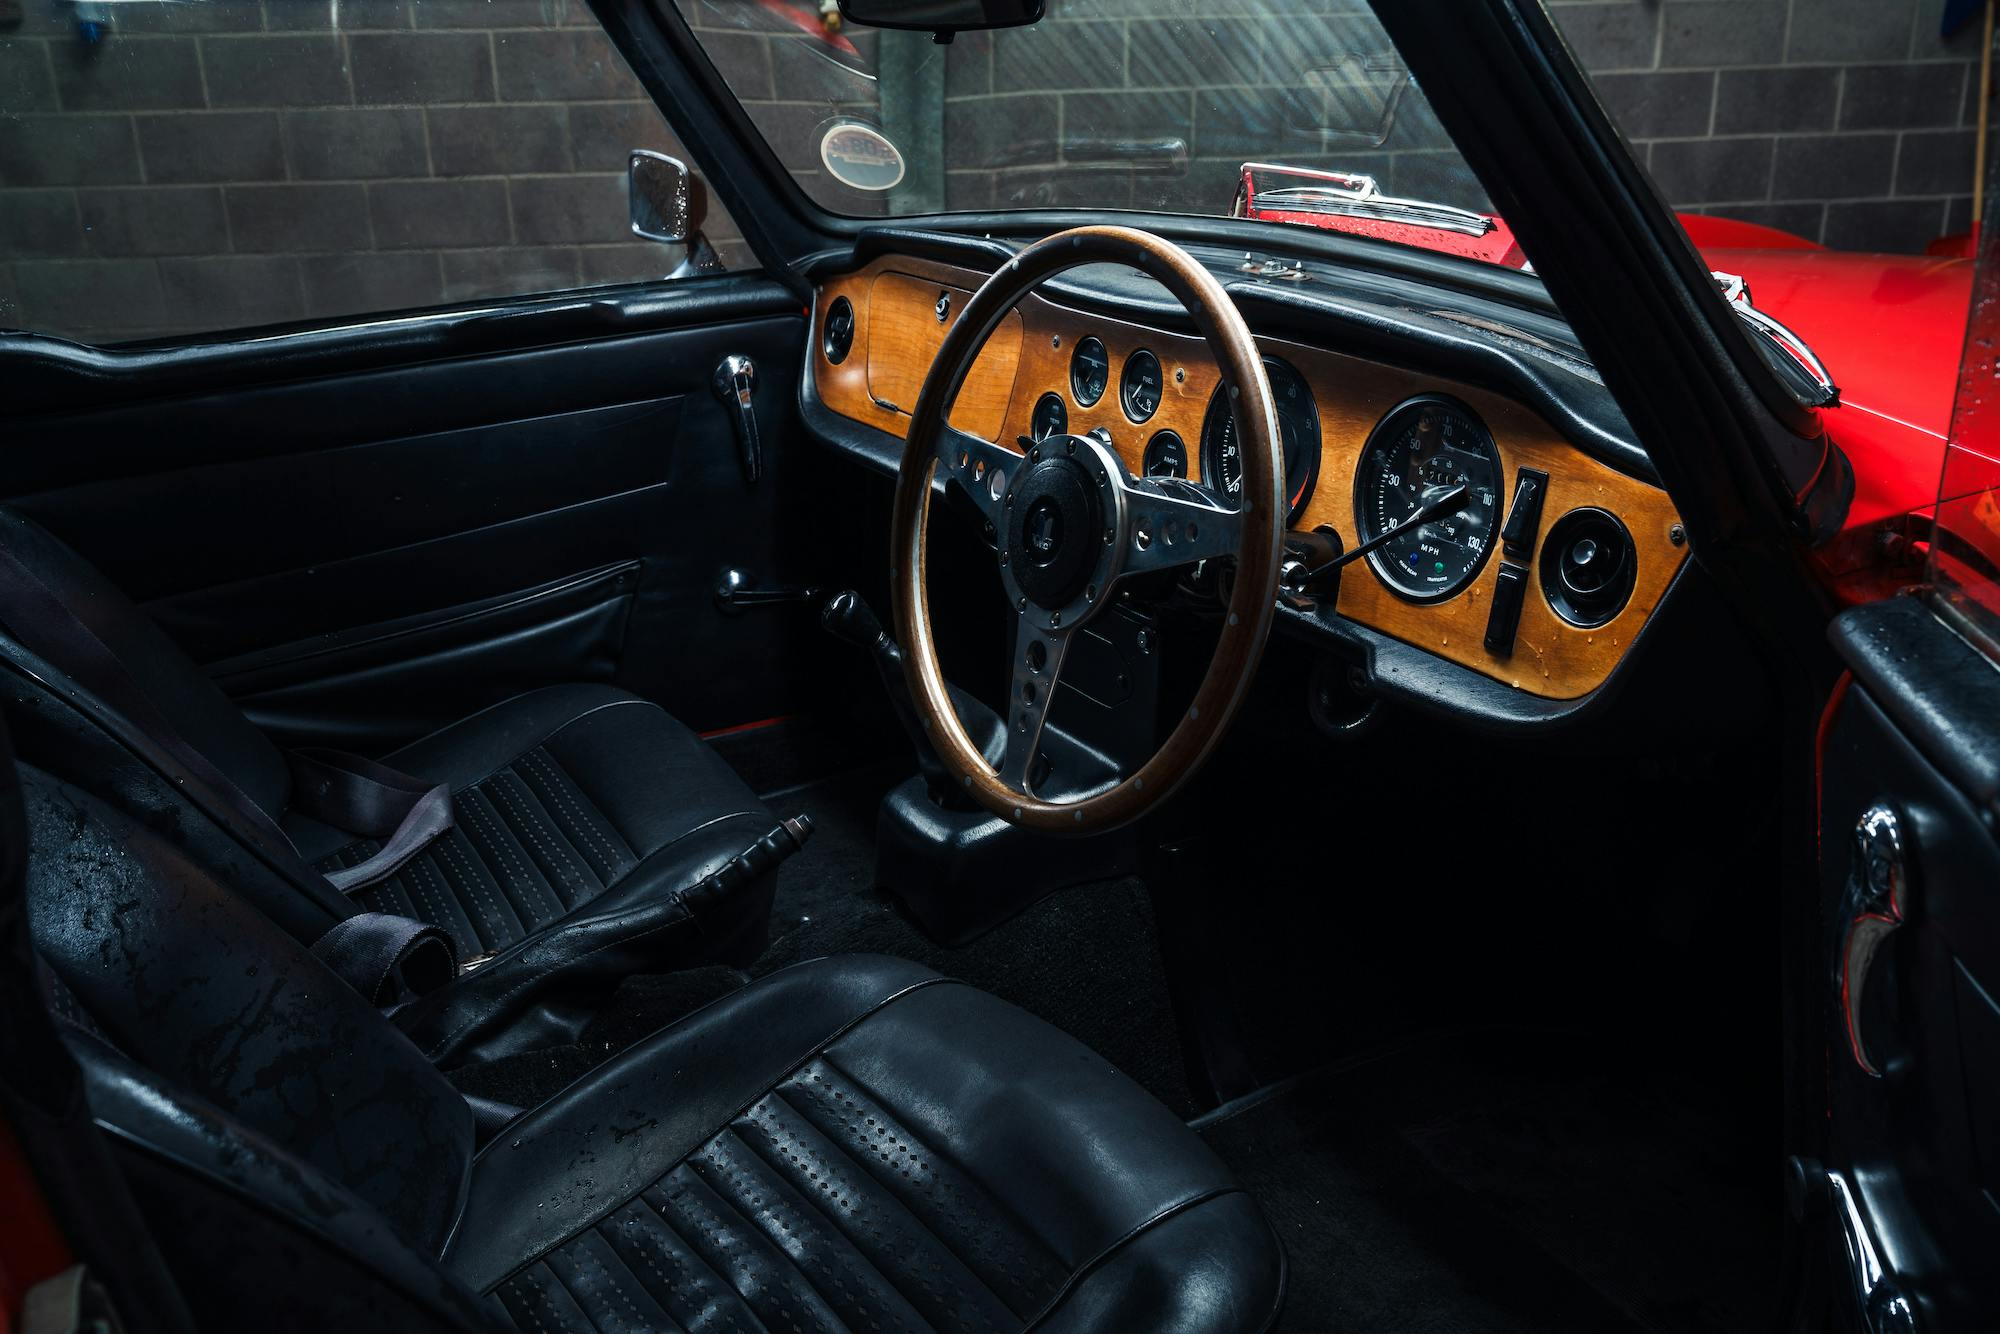 1972 Triumph TR6 interior